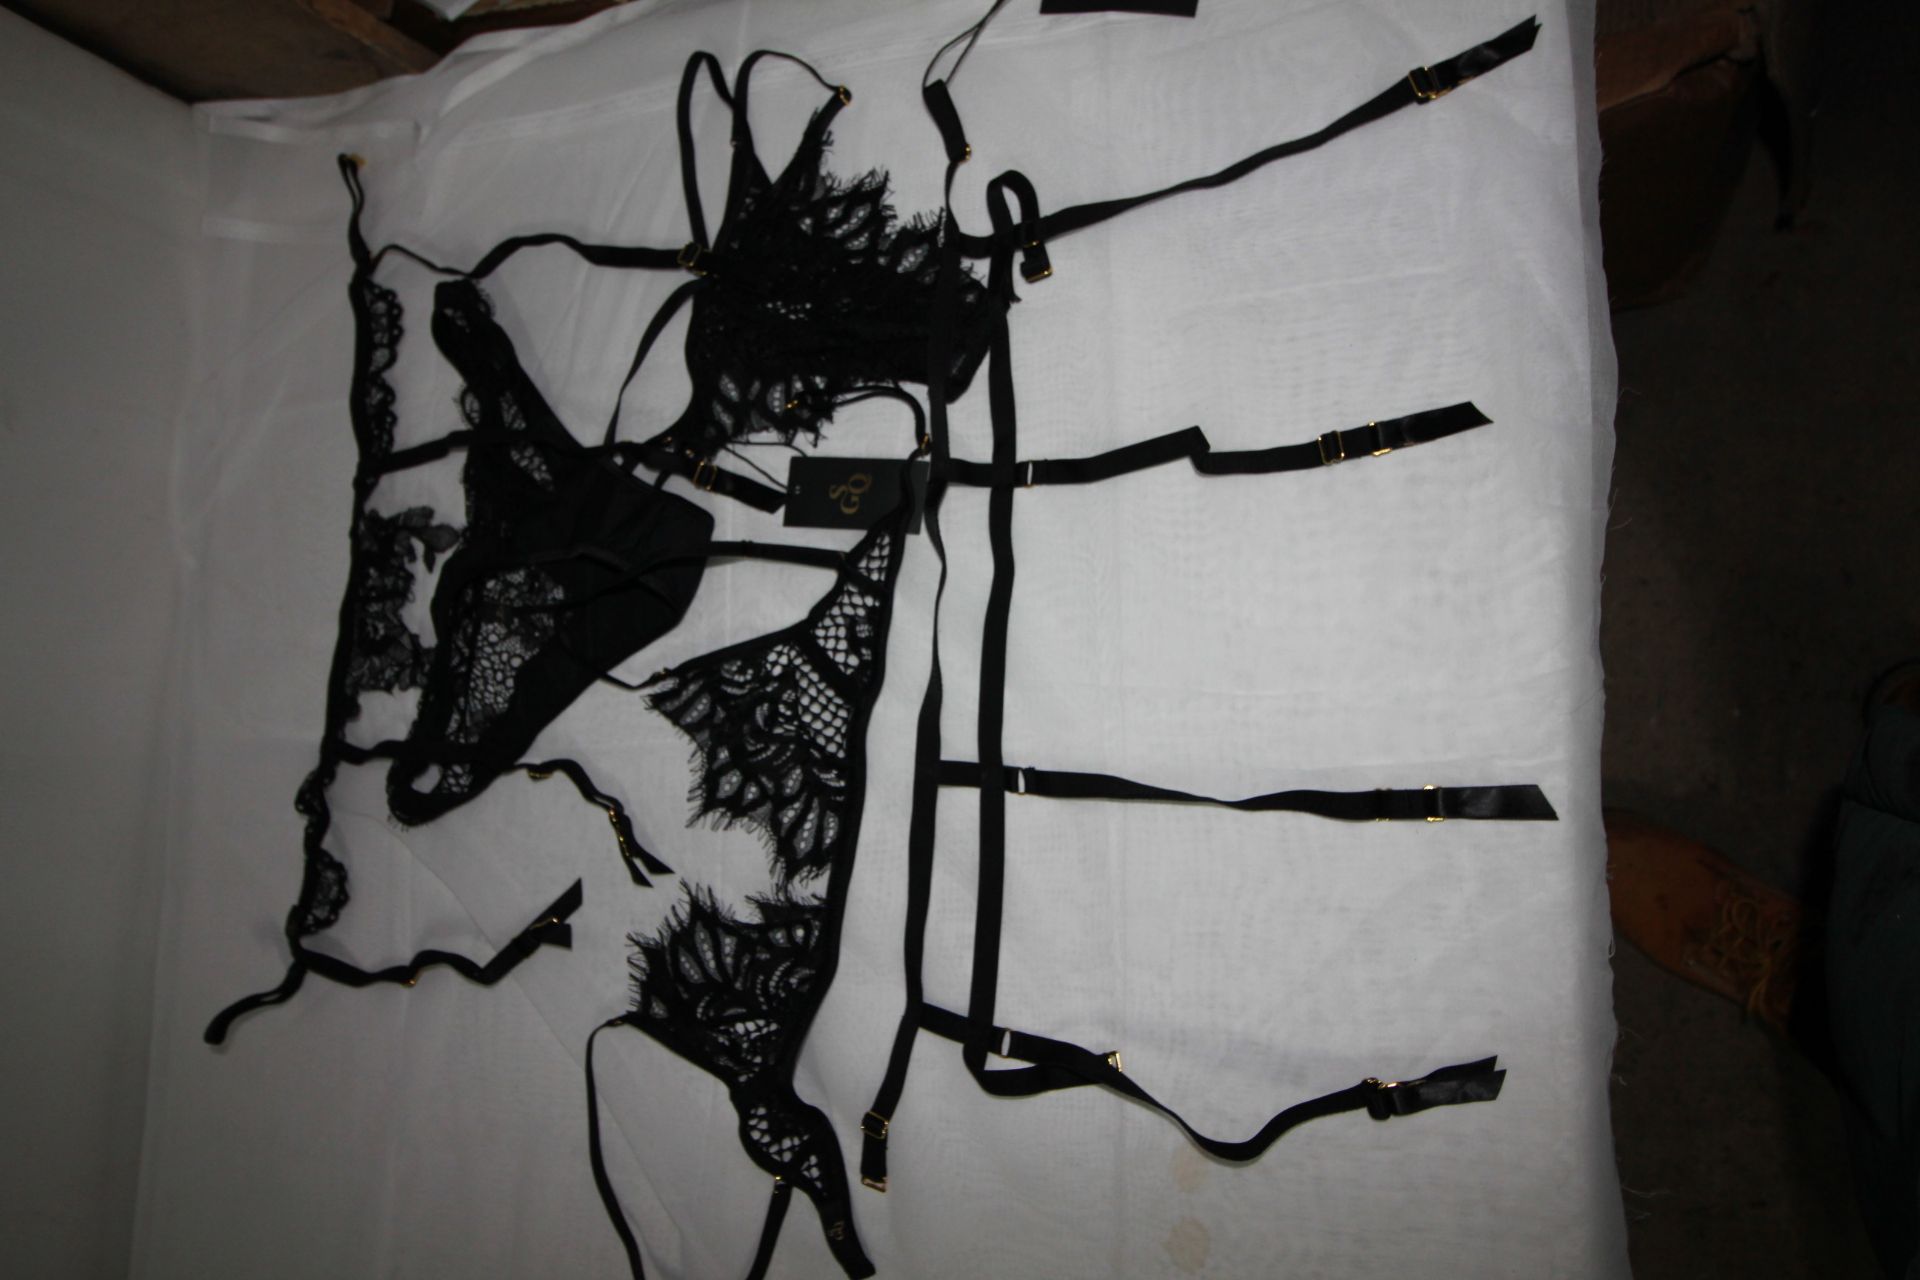 5 x Items of SGQ ladies under wear comprising 2 x suspender belts, 1 x bra and 2 briefs, all black